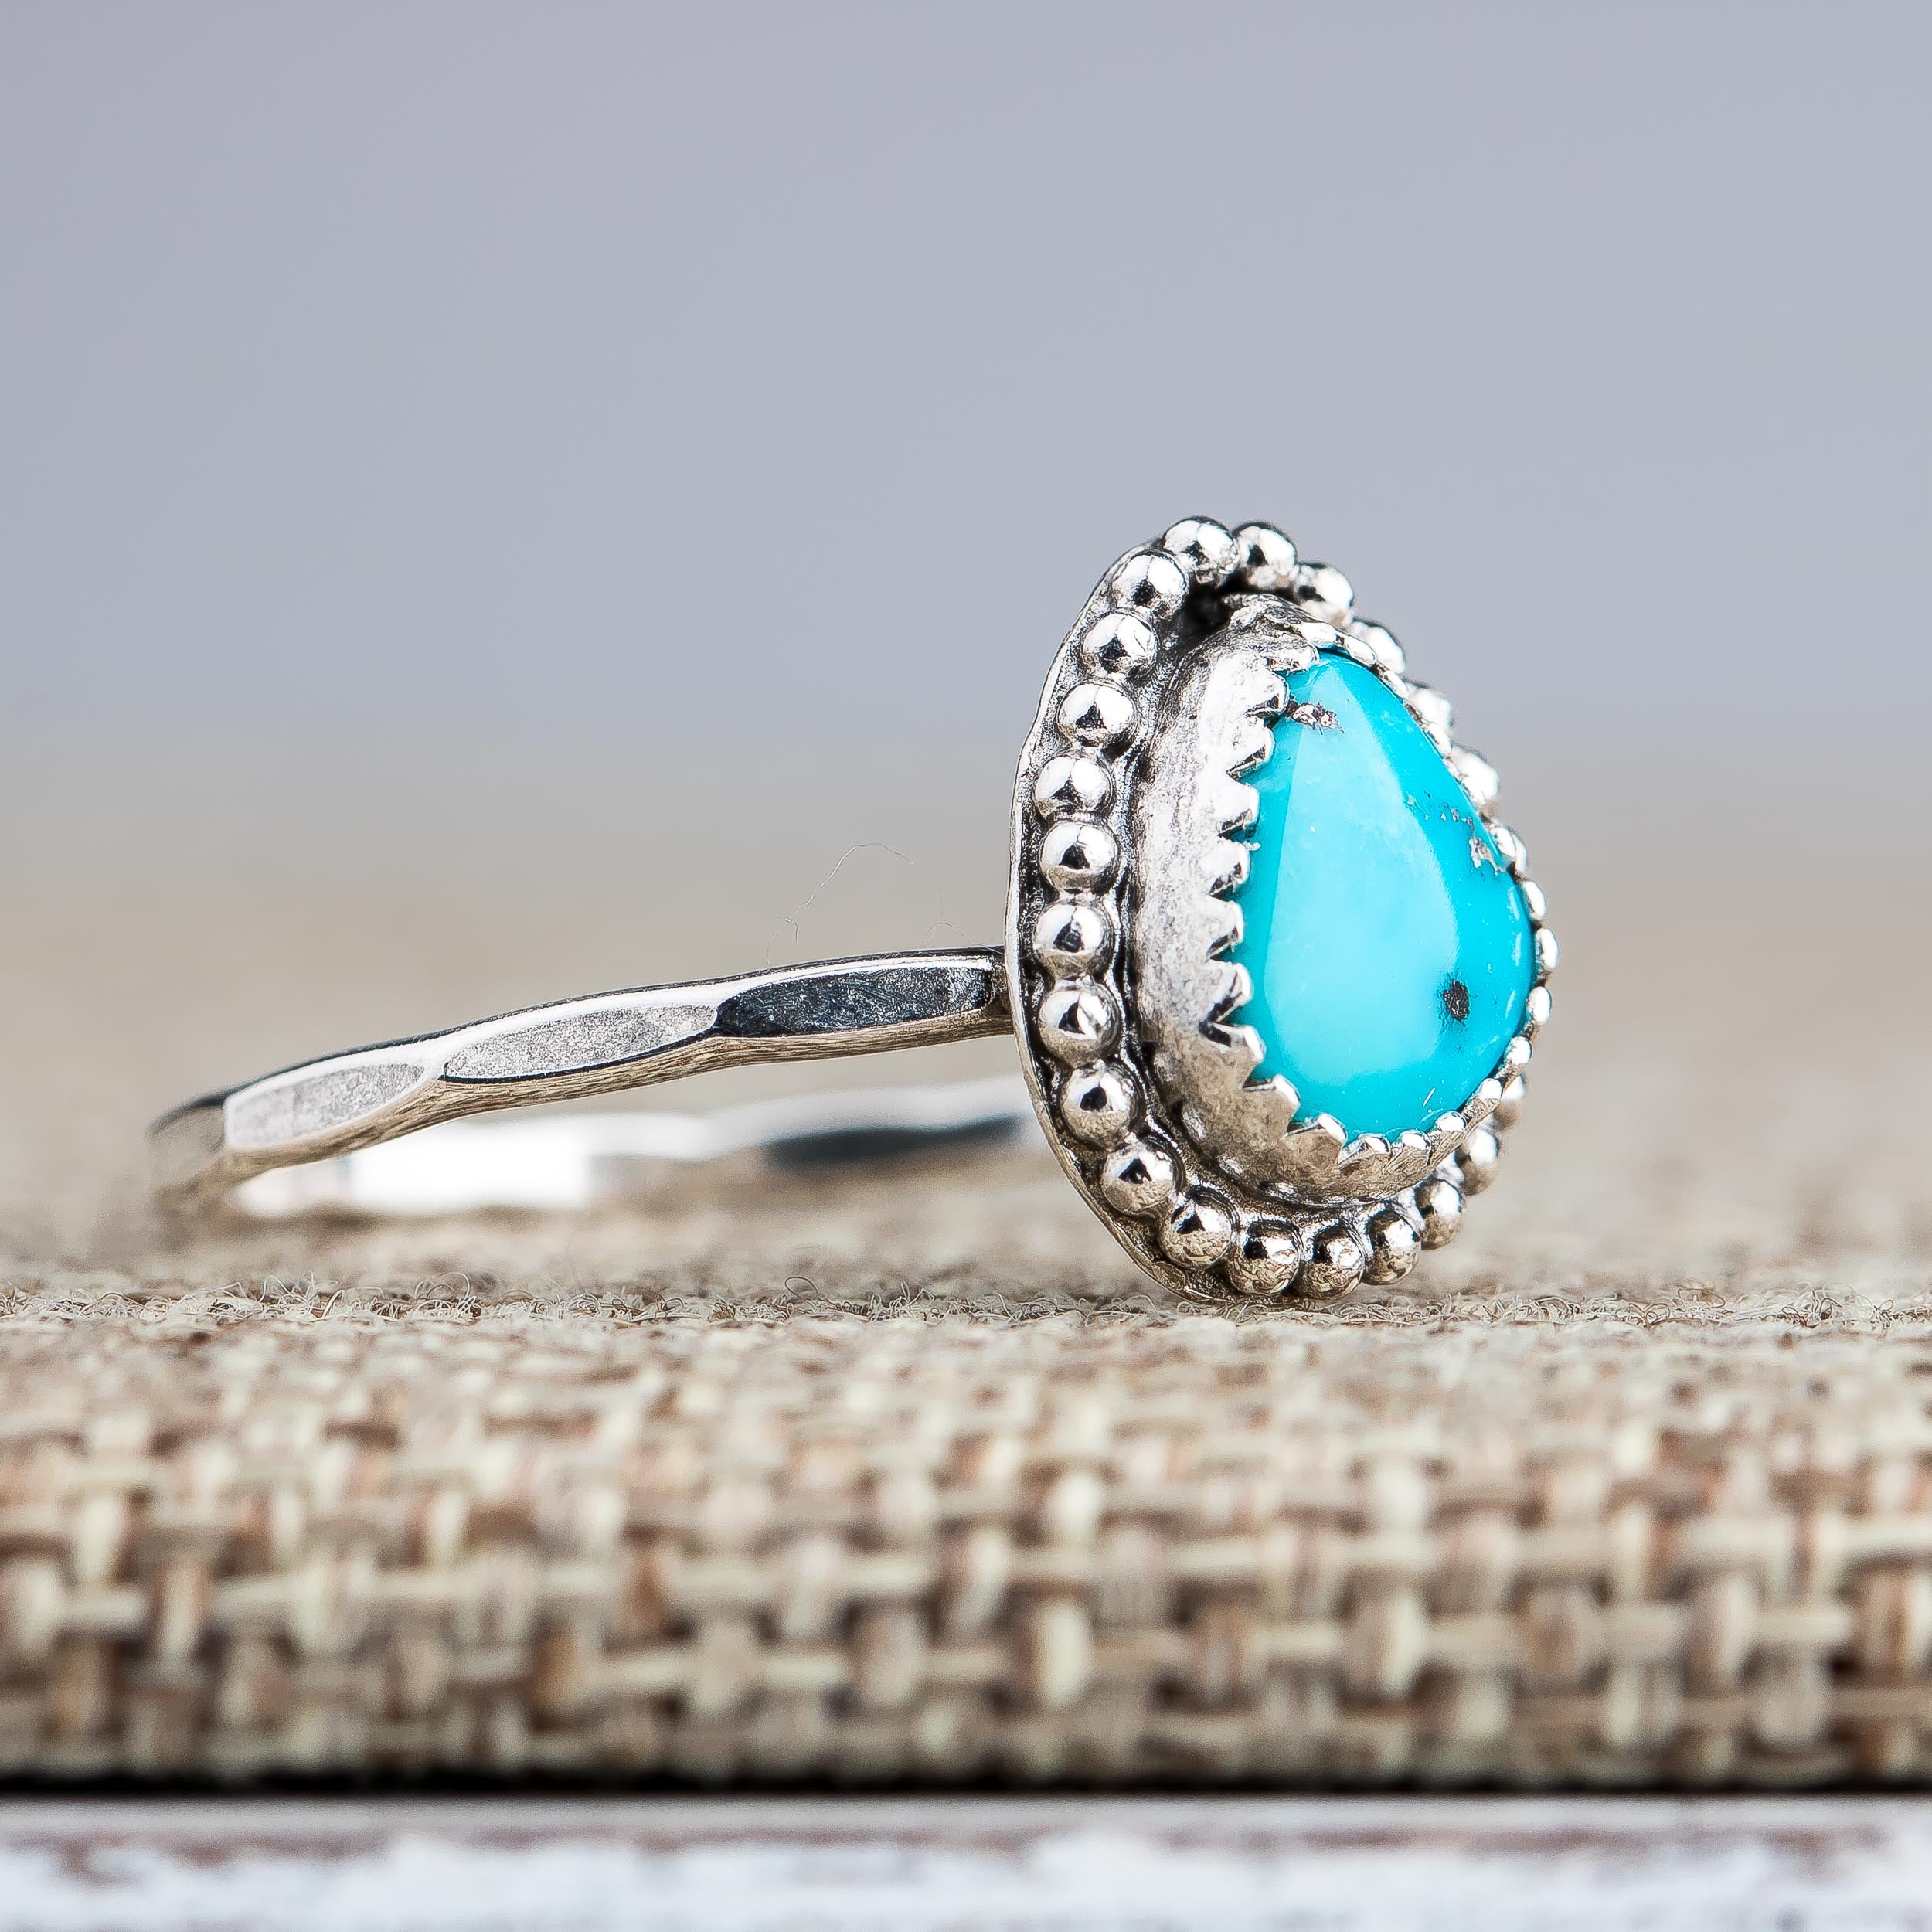 Size 8.25 Aqua Blue Morenci Turquoise Gemstone Ring